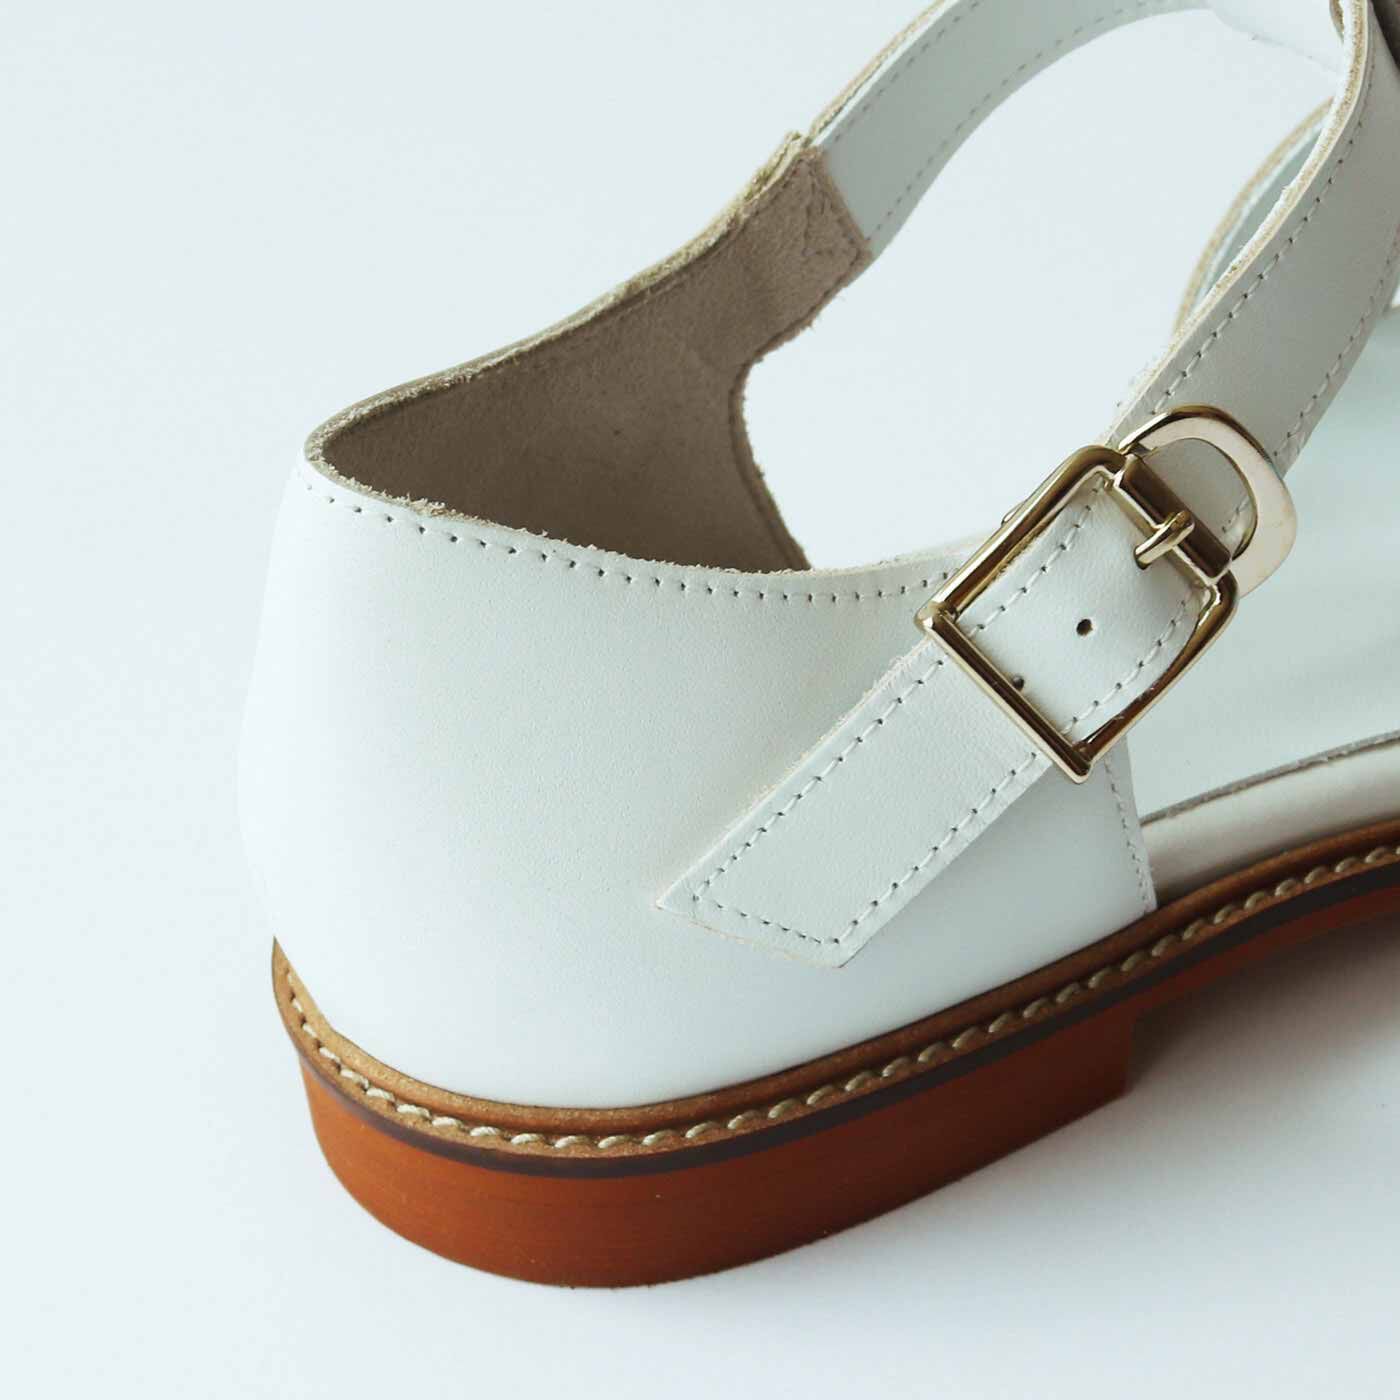 ＆Stories|靴デザイナーの理想で仕上げた 職人本革のフィッシャーマンシューズ〈ホワイト〉|金具はフックタイプで脱ぎ履きもスムーズ。今回の新色はさわやかな〈ホワイト〉。抜け感のある軽やかな足もとを演出してくれます。